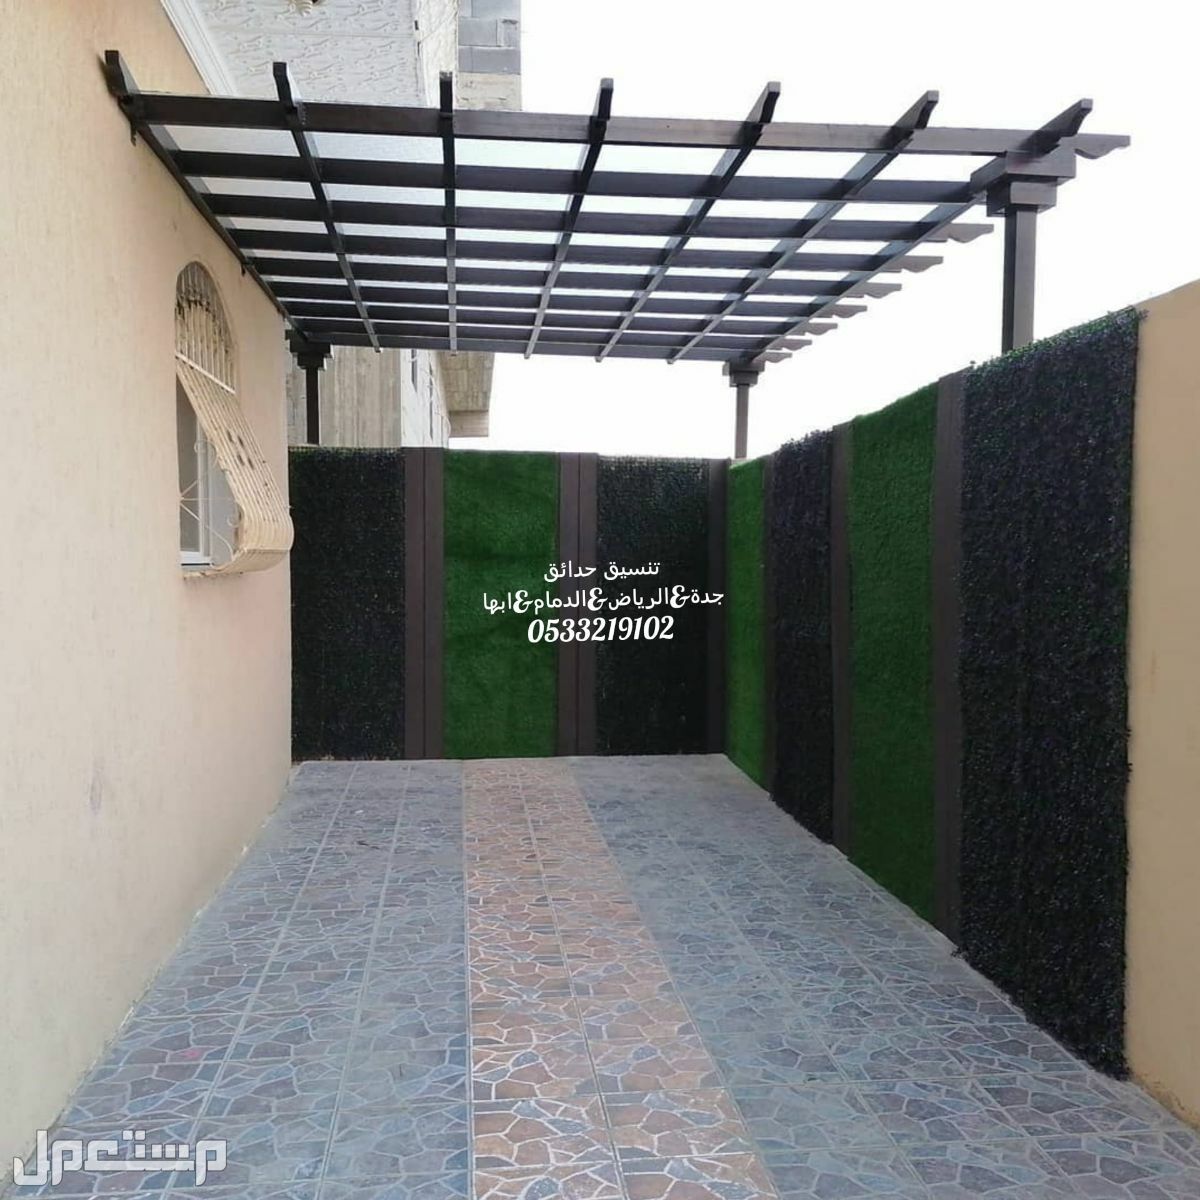 تنسيق عشب صناعى السعوديه تركيب مظلات تصميم شلالات